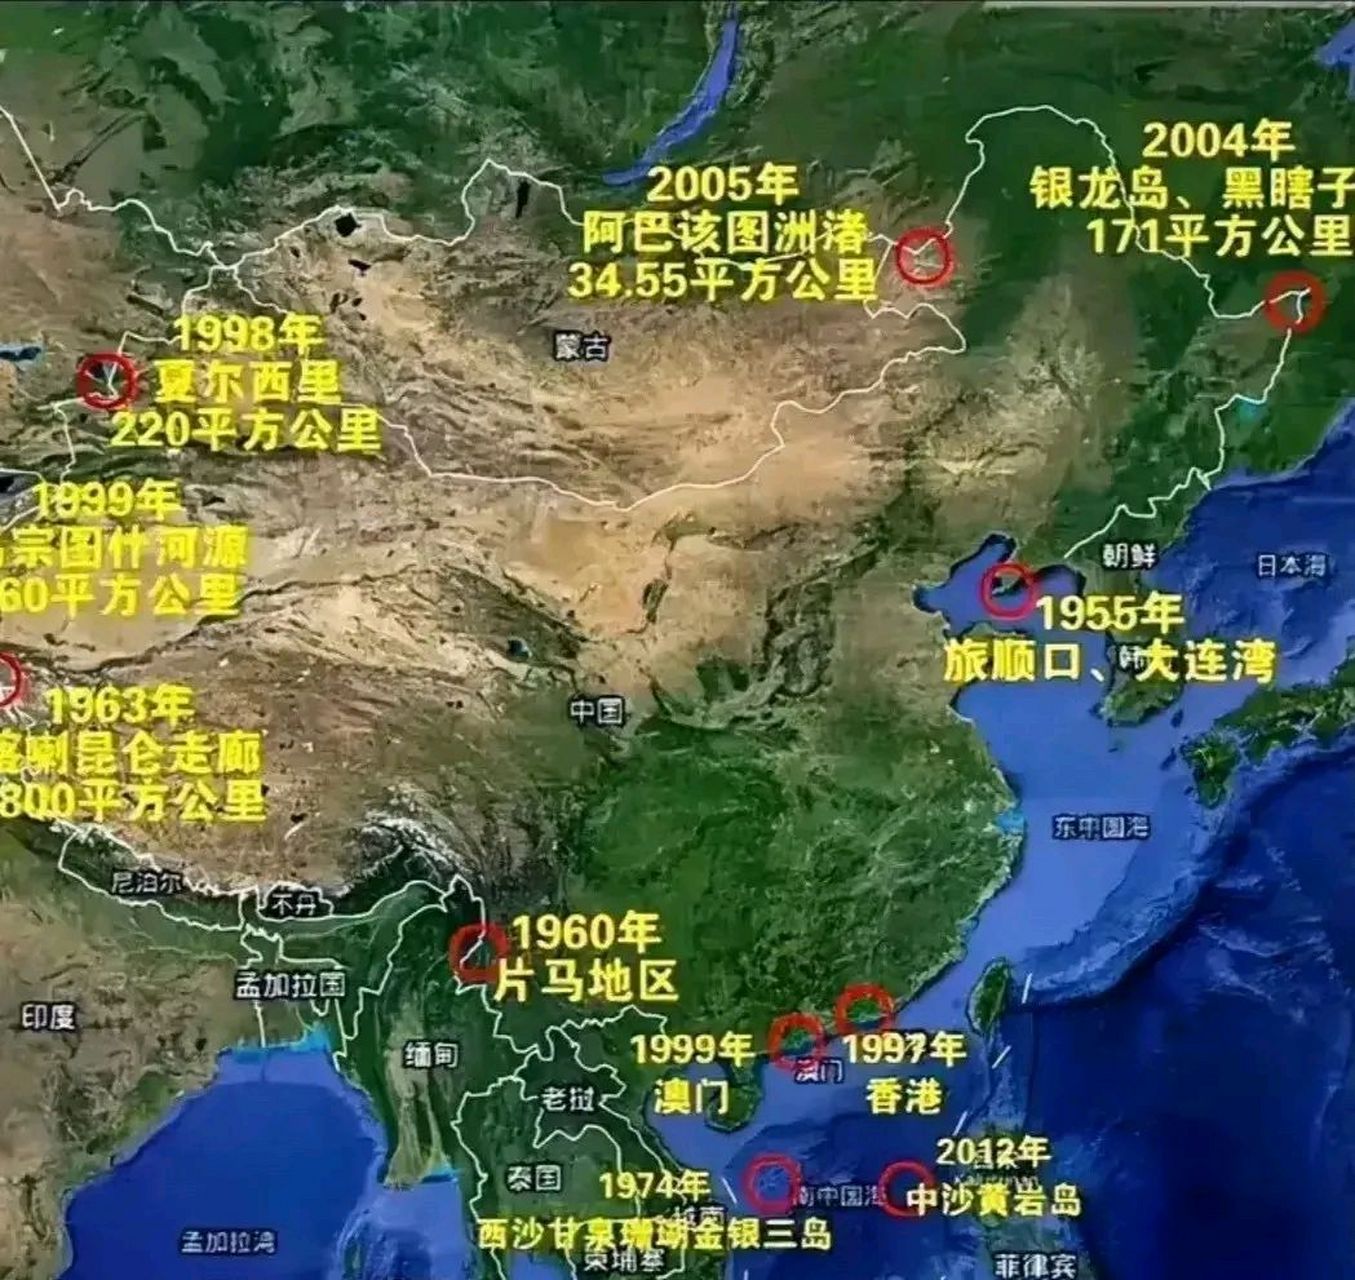 新中国成立后,被我们陆续收回的领土包括:  1955年,旅顺口,大连湾